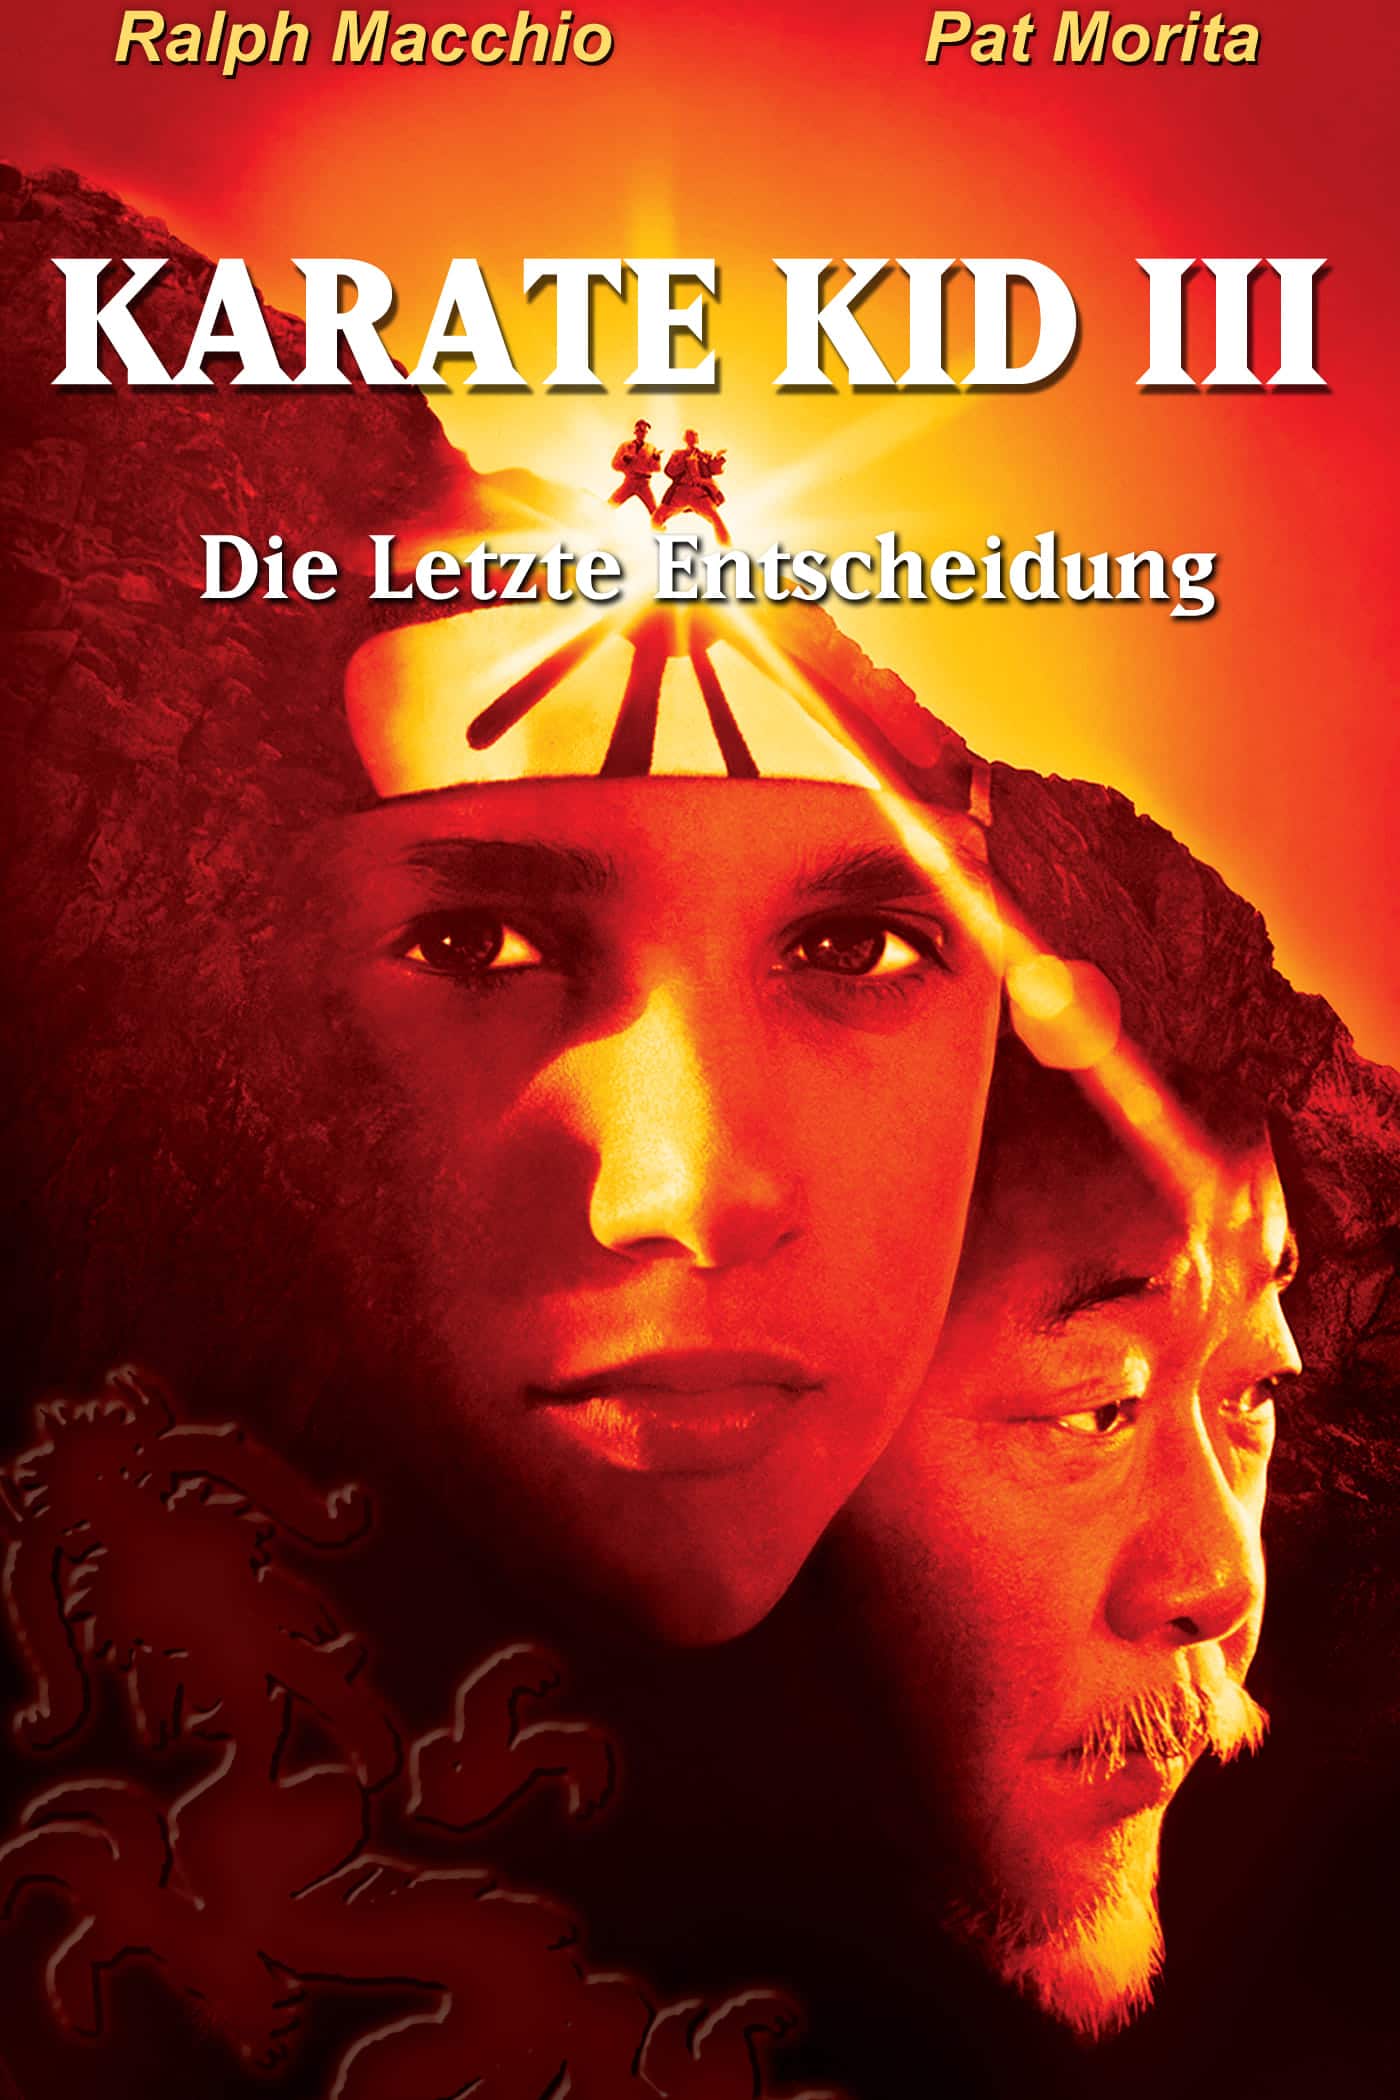 Plakat von "Karate Kid III - Die letzte Entscheidung"